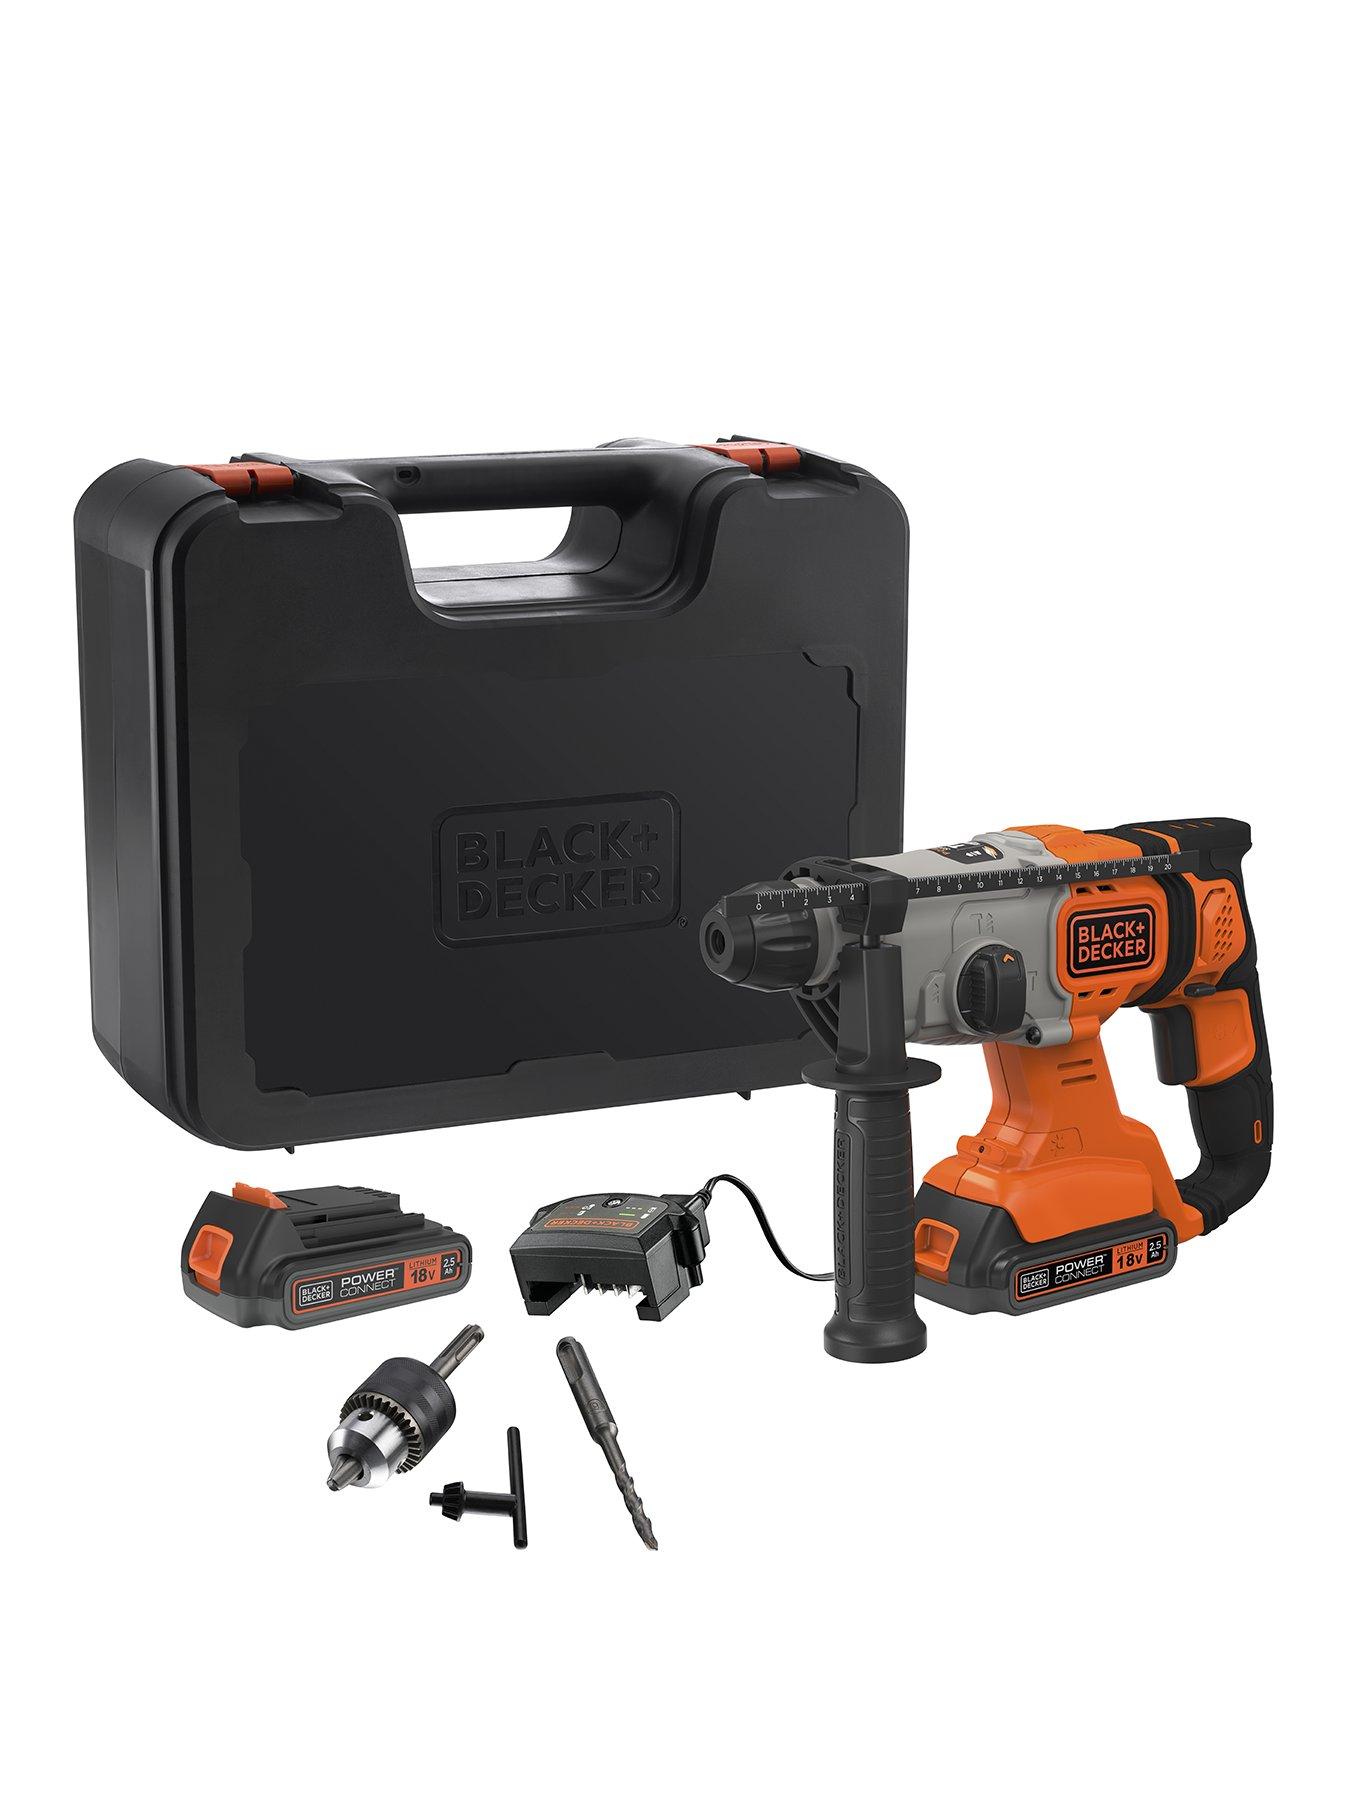 Black & Decker hammer drill 710W 13Mm S/key + tool box + 40